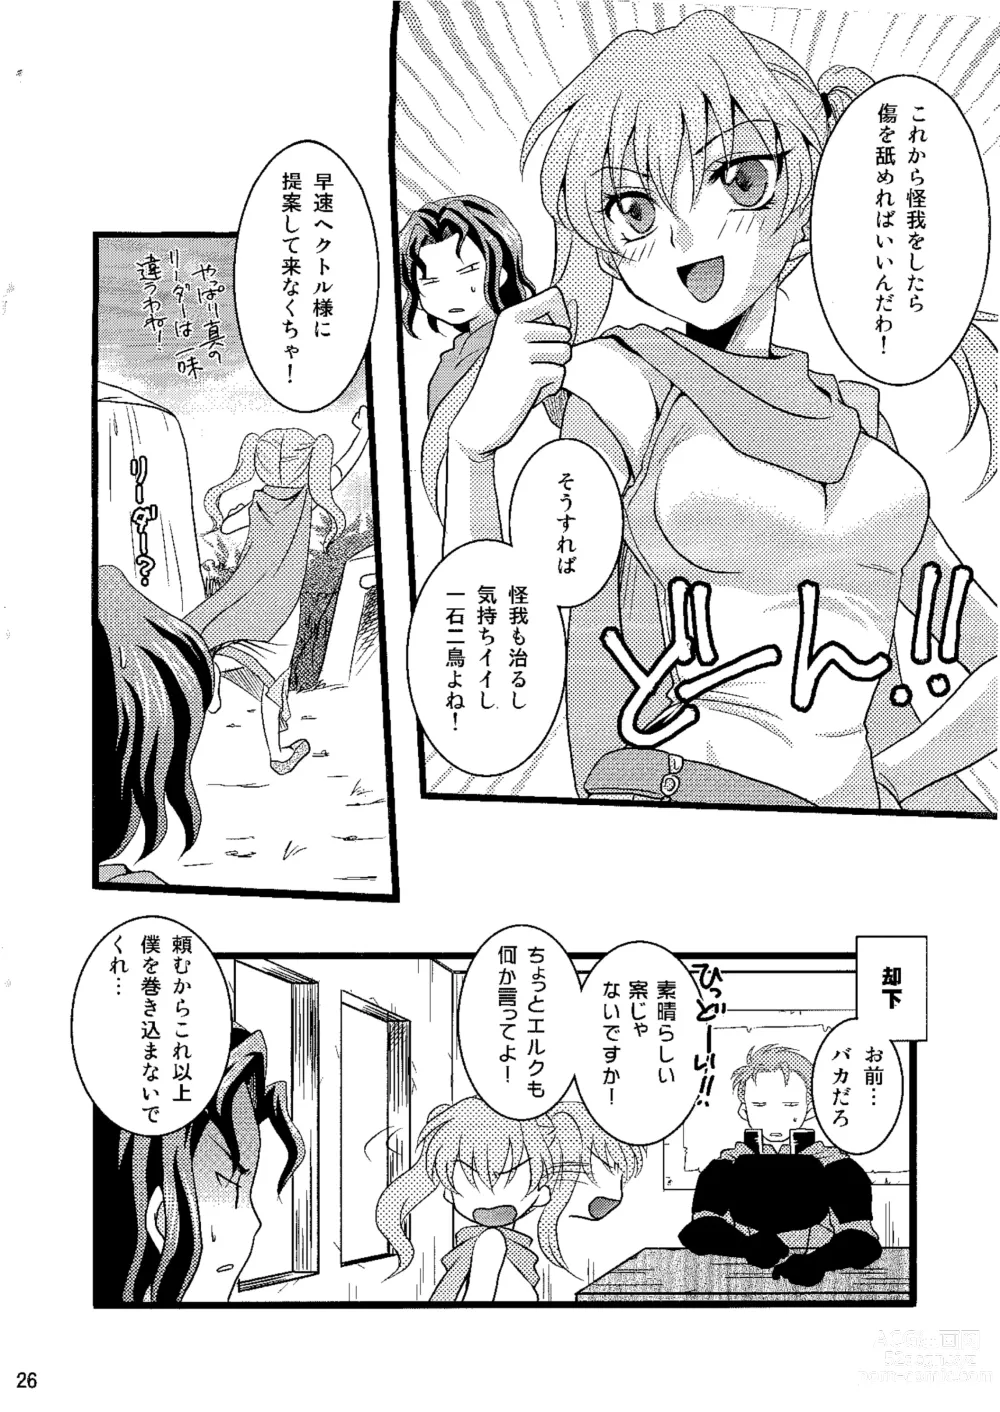 Page 25 of doujinshi Candy Cutie 8